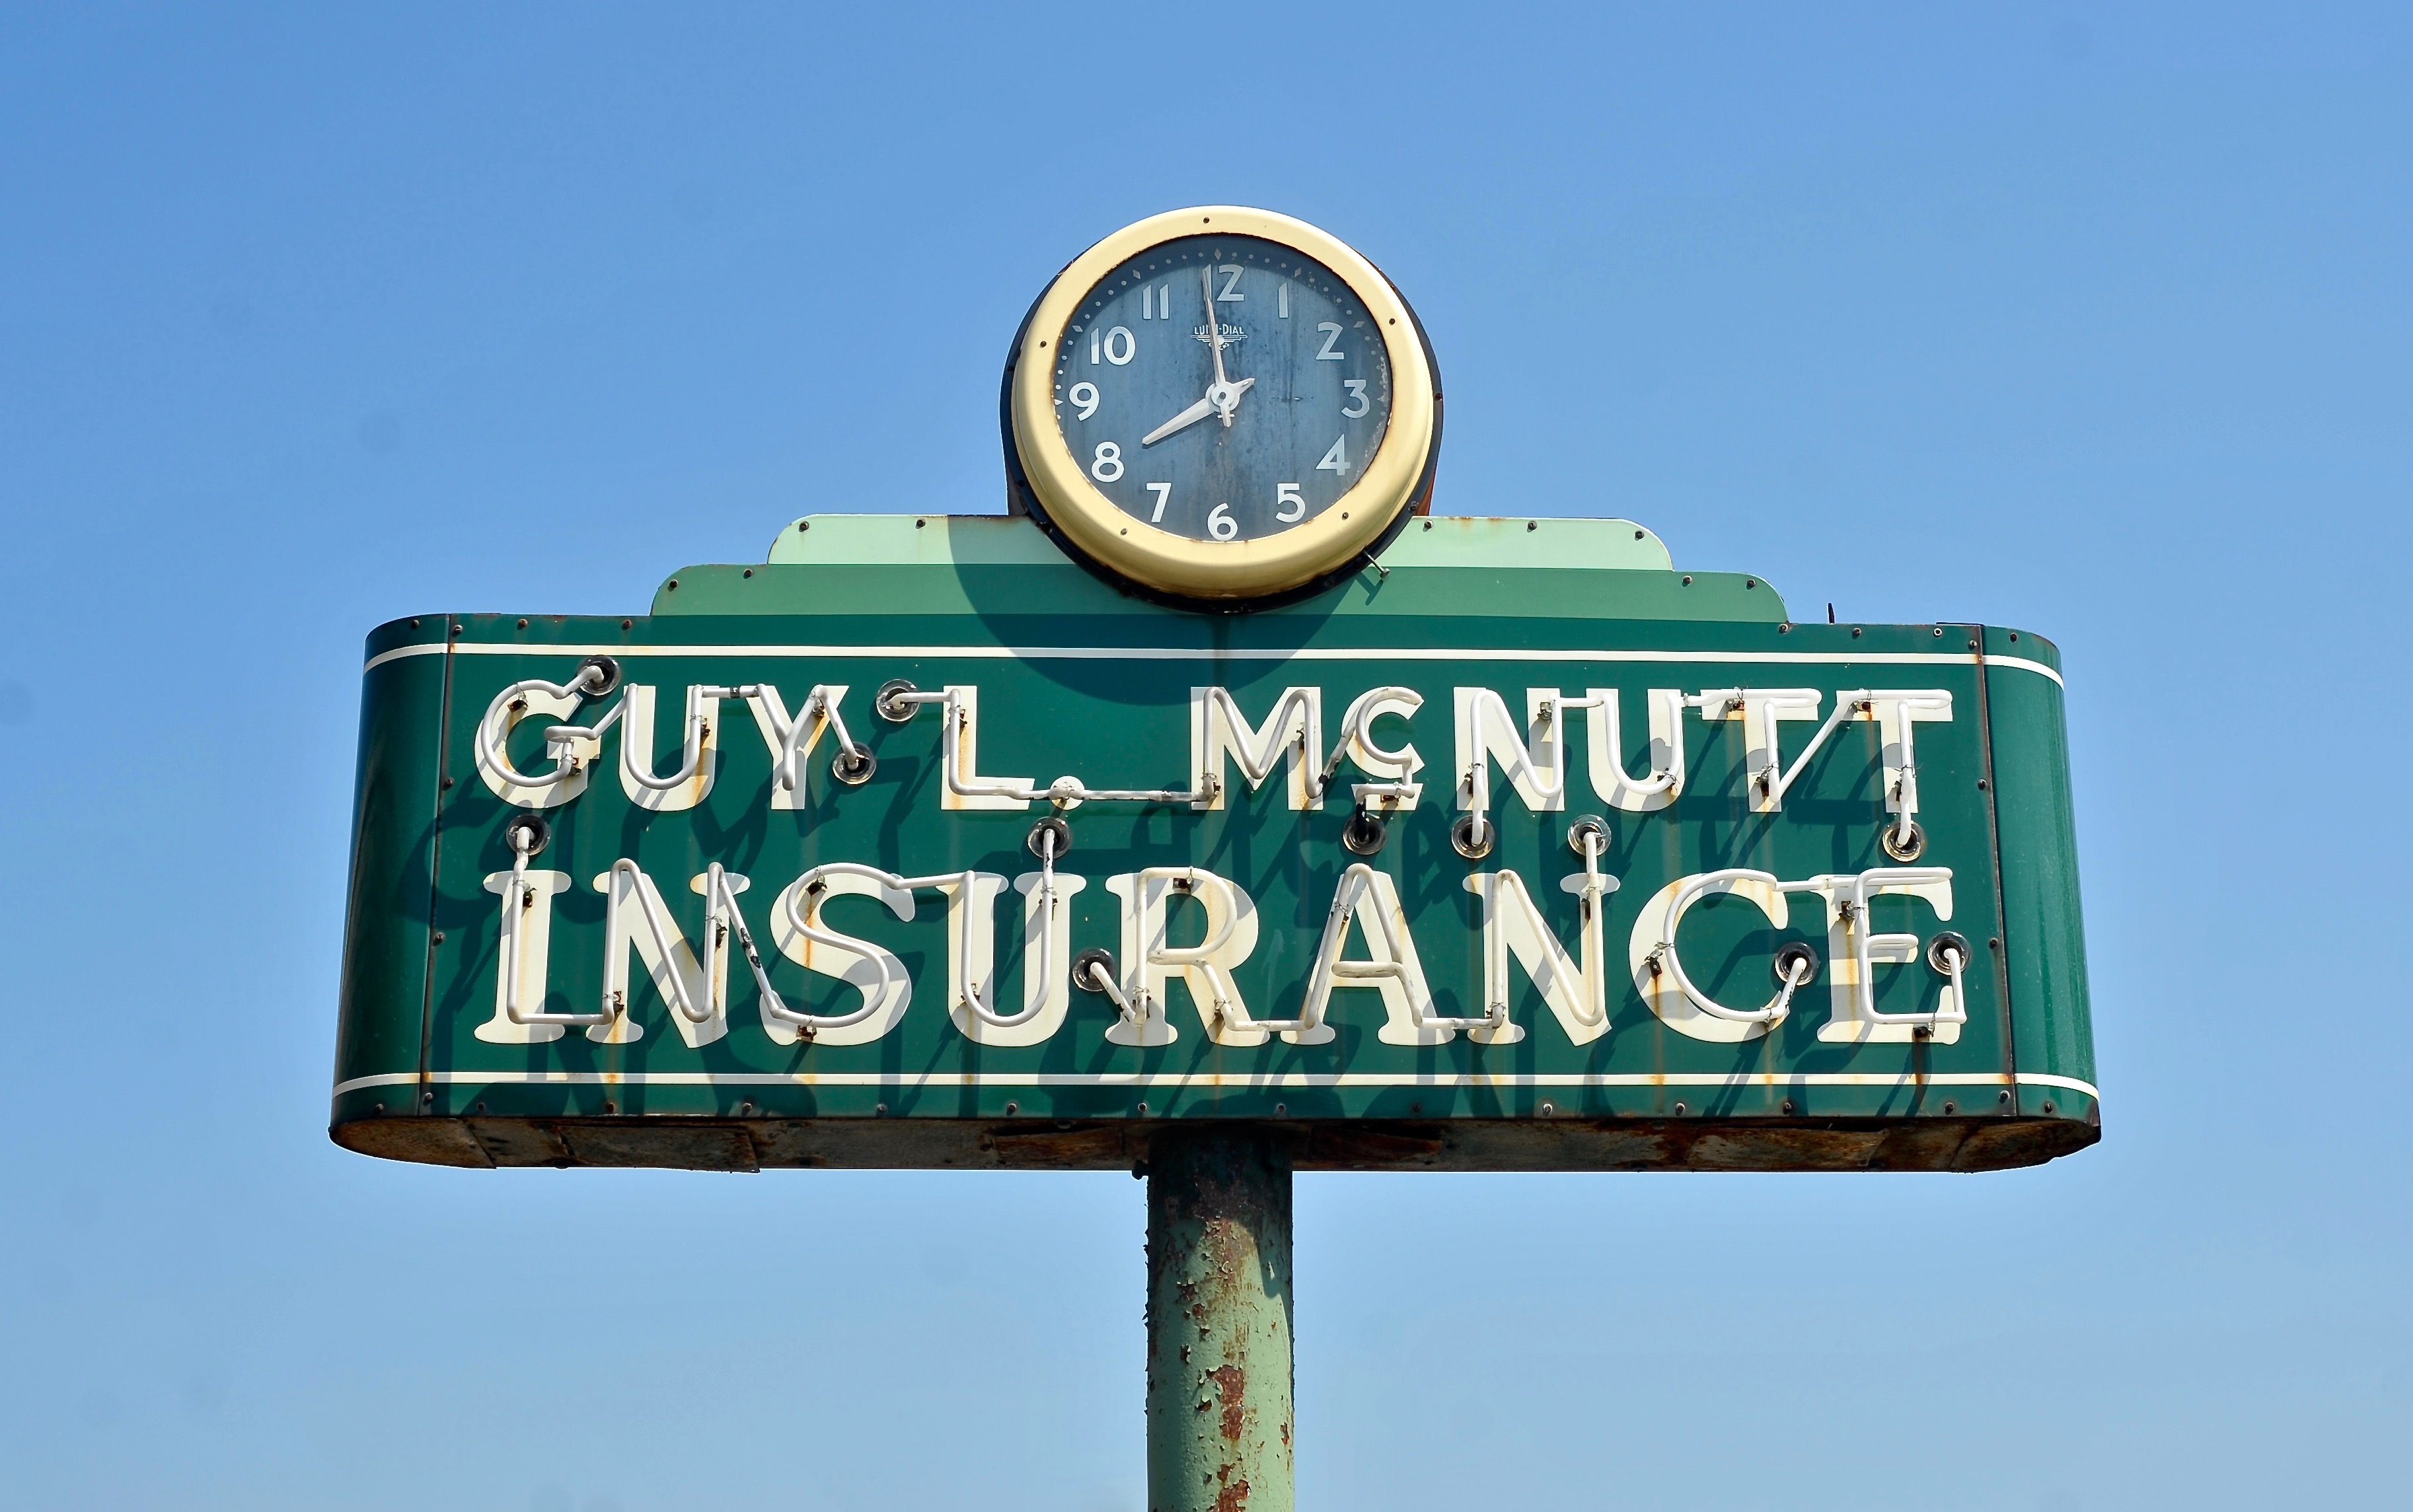 Guy L. McNutt Insurance - 910 4th Street, Rosenberg, Texas U.S.A. - September 2, 2016